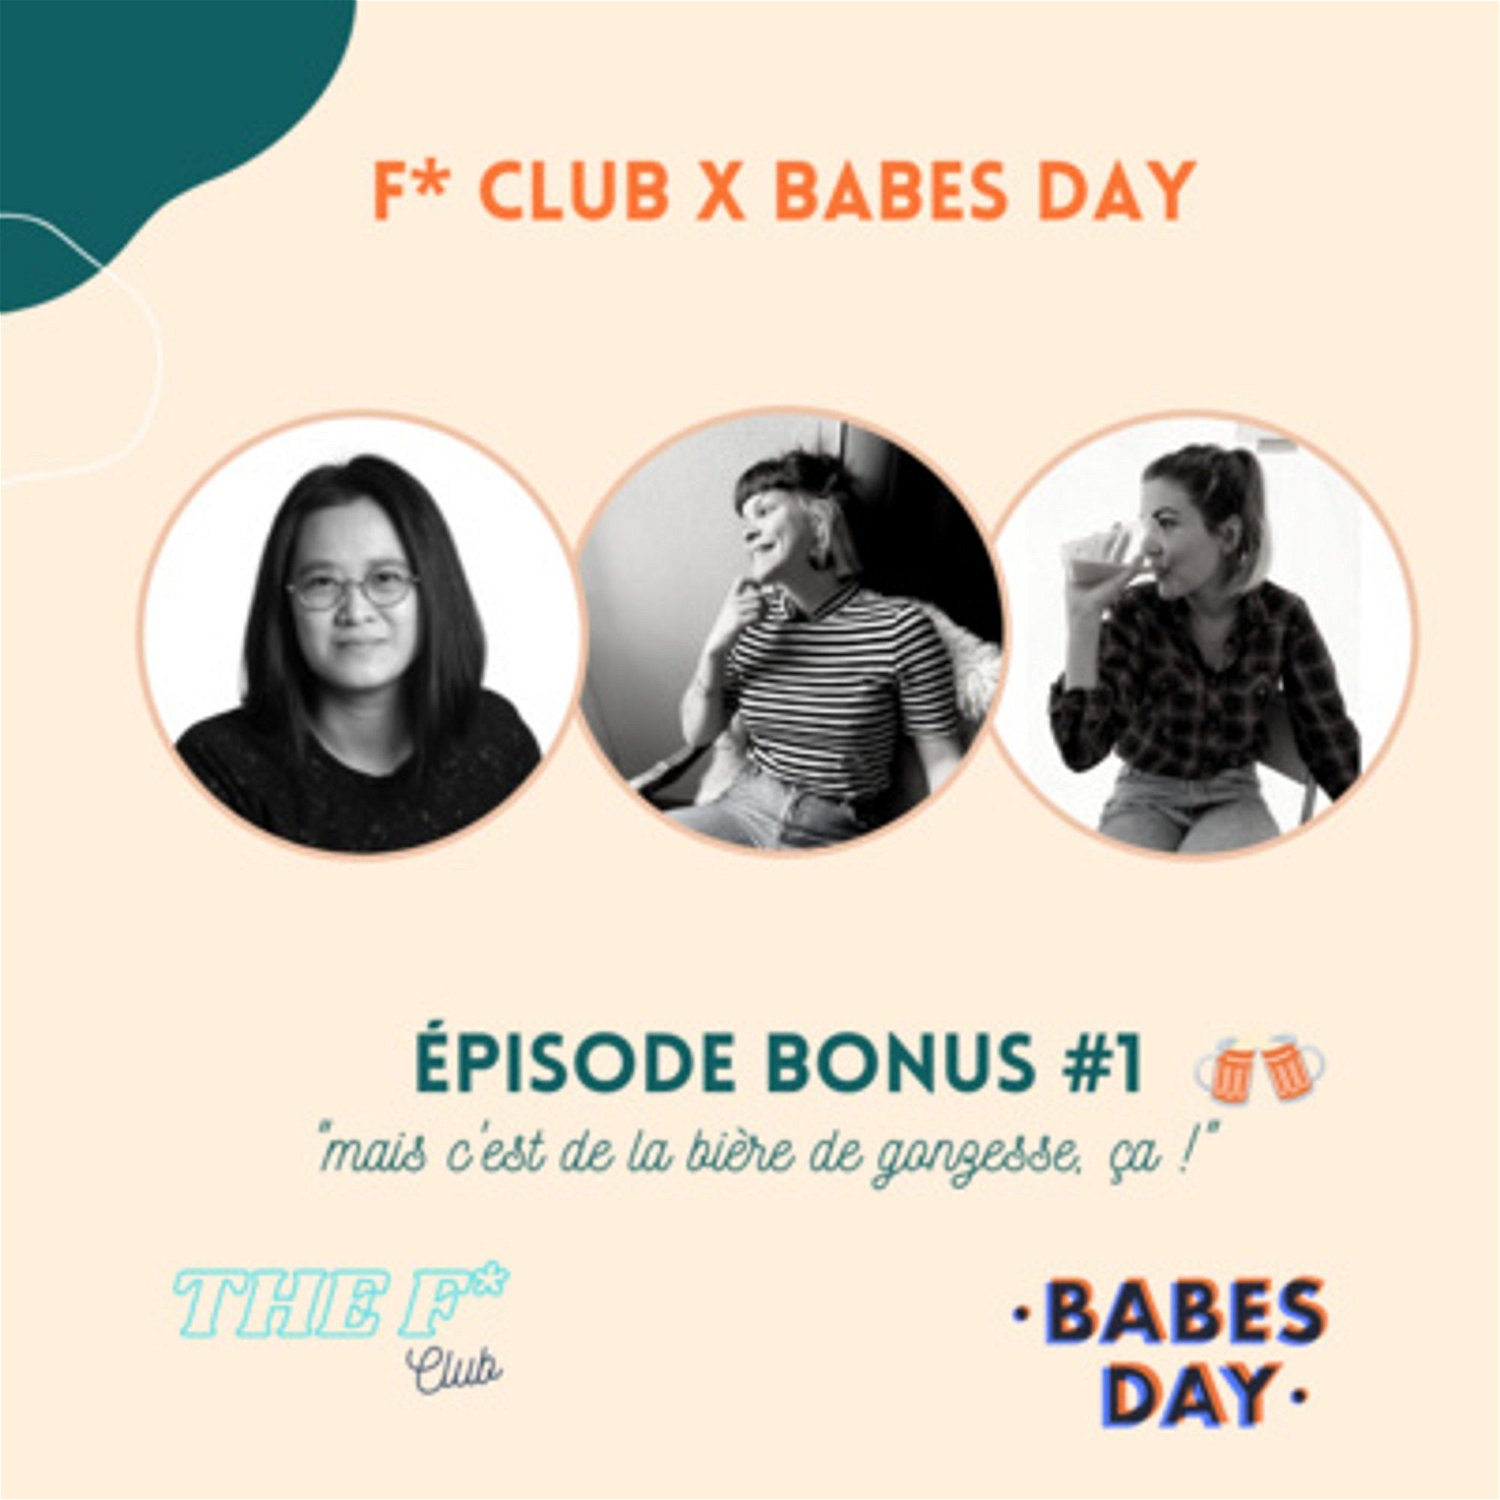 F* Club X Babes Day 2021 | "Mais c'est de la bière de gonzesse ça !" by The F Club | Le podcast des féministes de l'Ouest